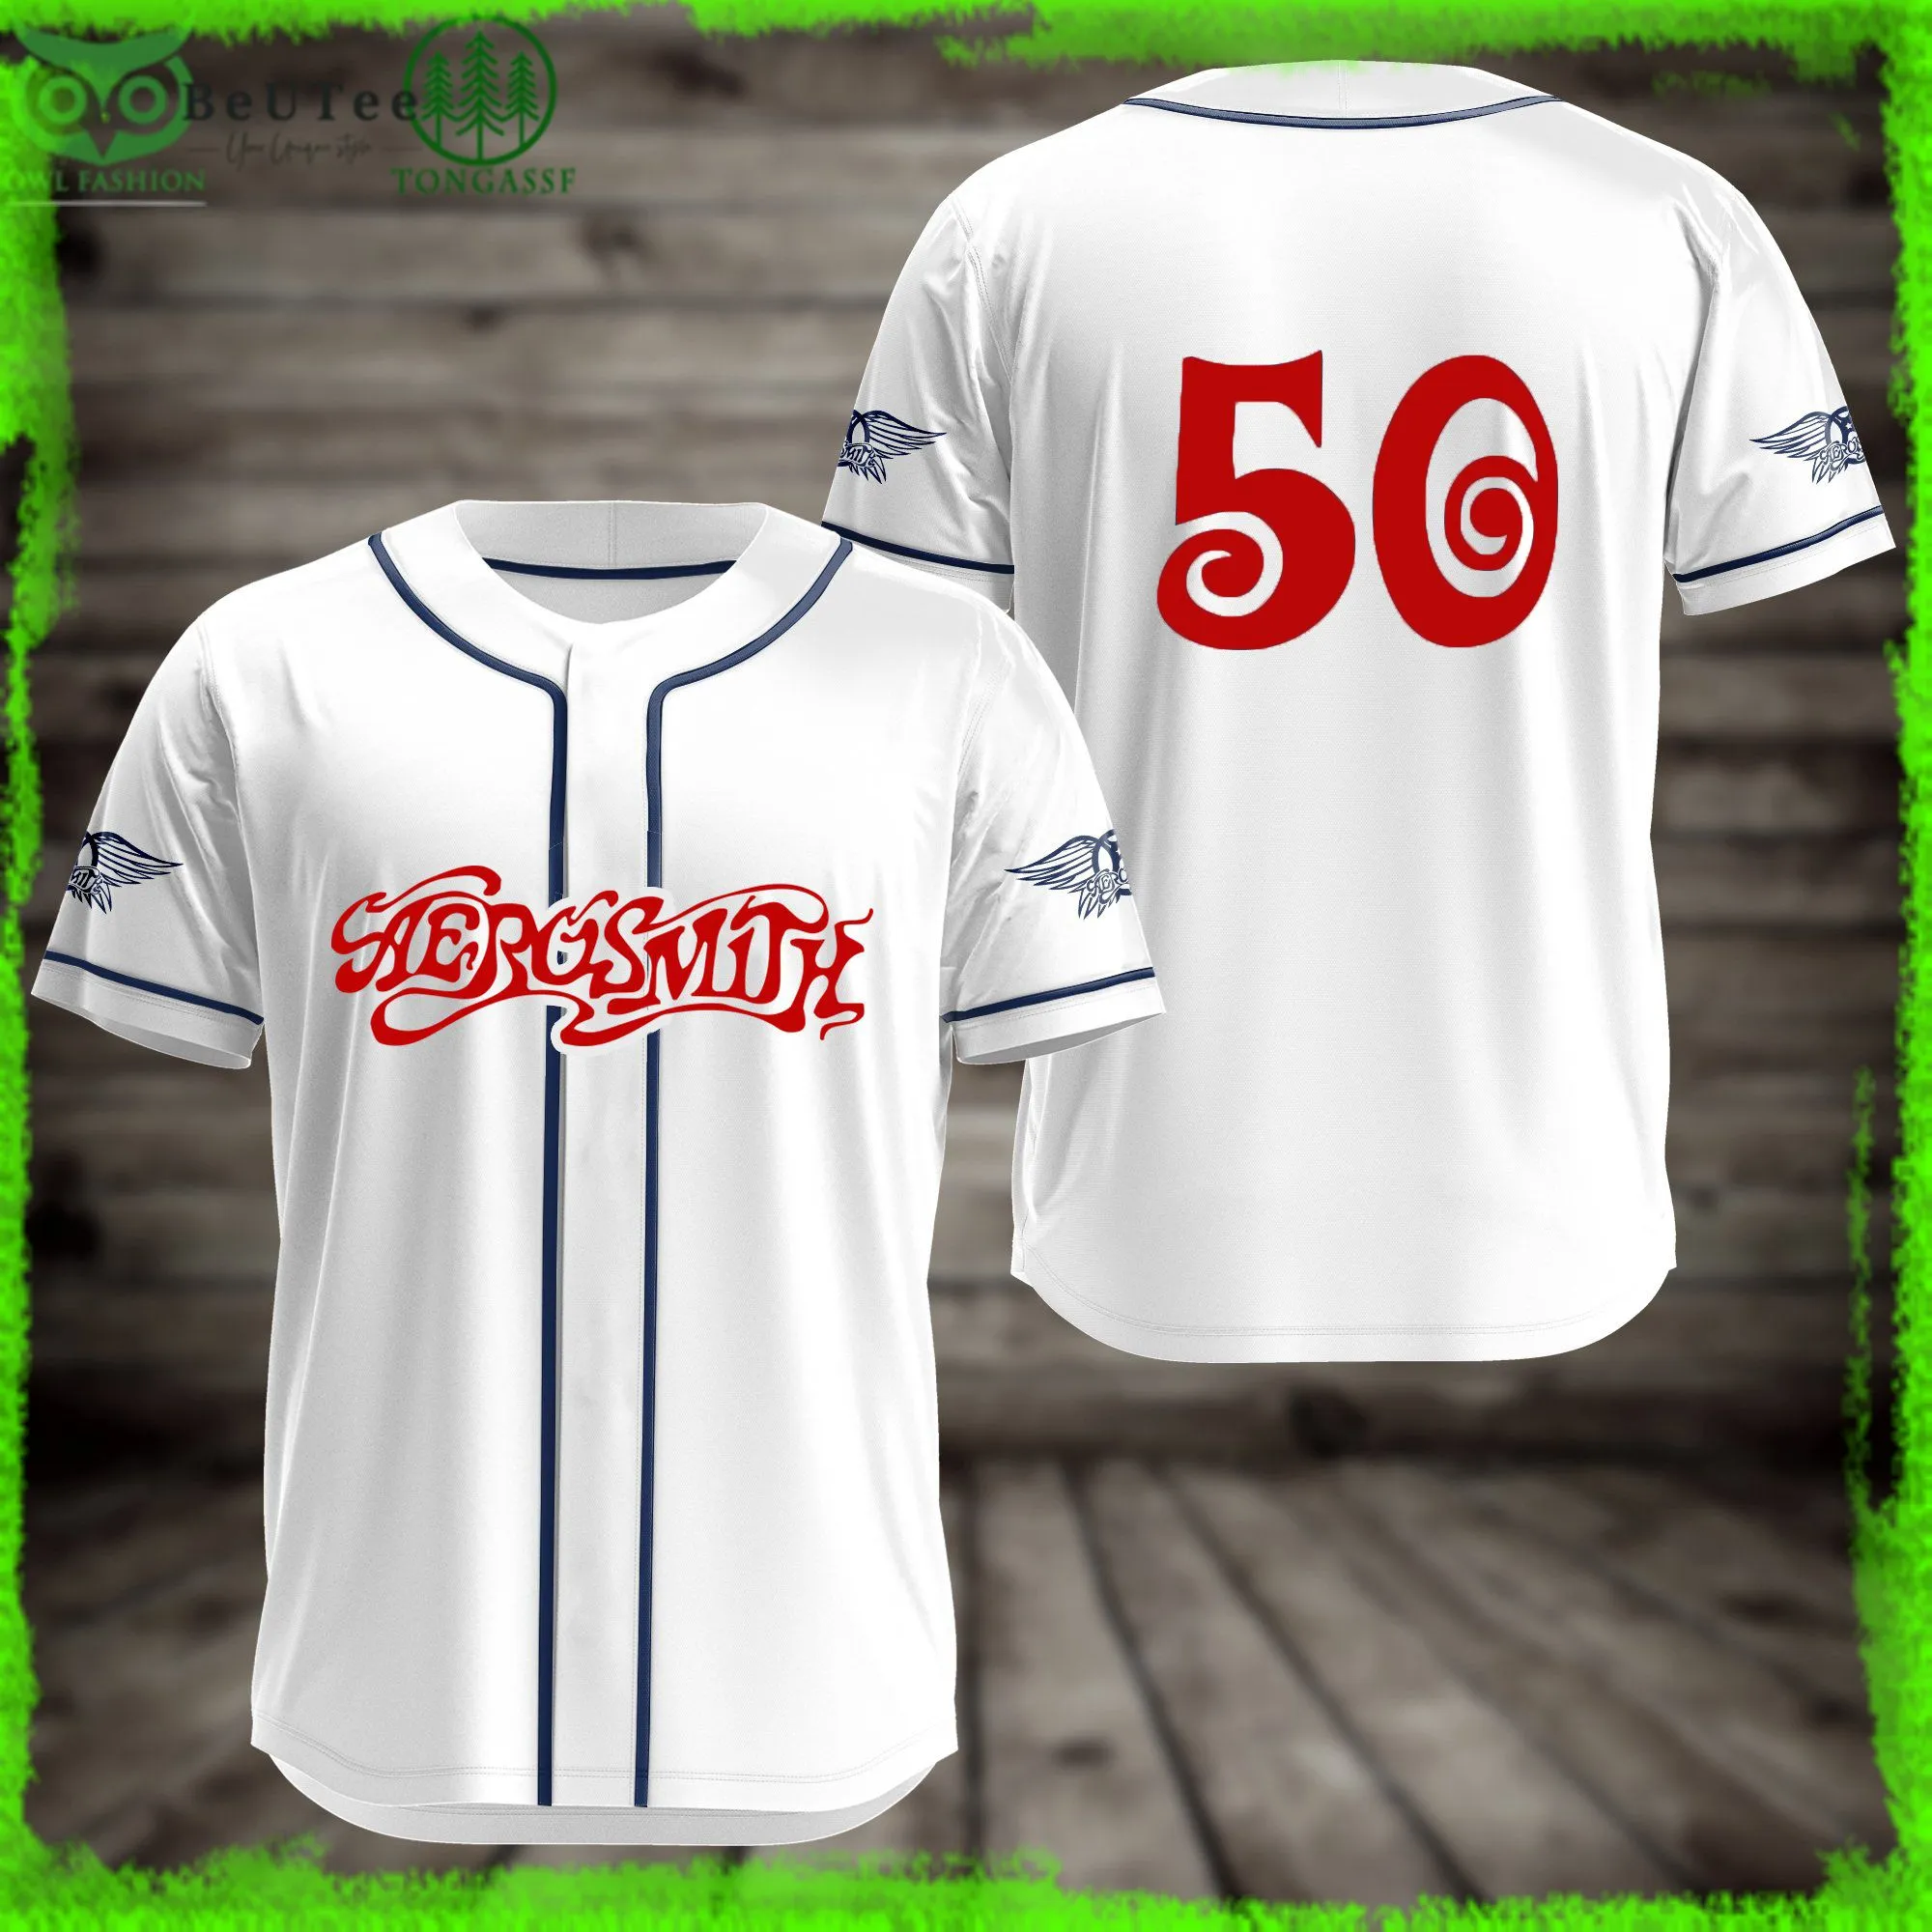 Aerosmith Band White 50 Anniversary Baseball Jersey Shirt Husband,Baseball